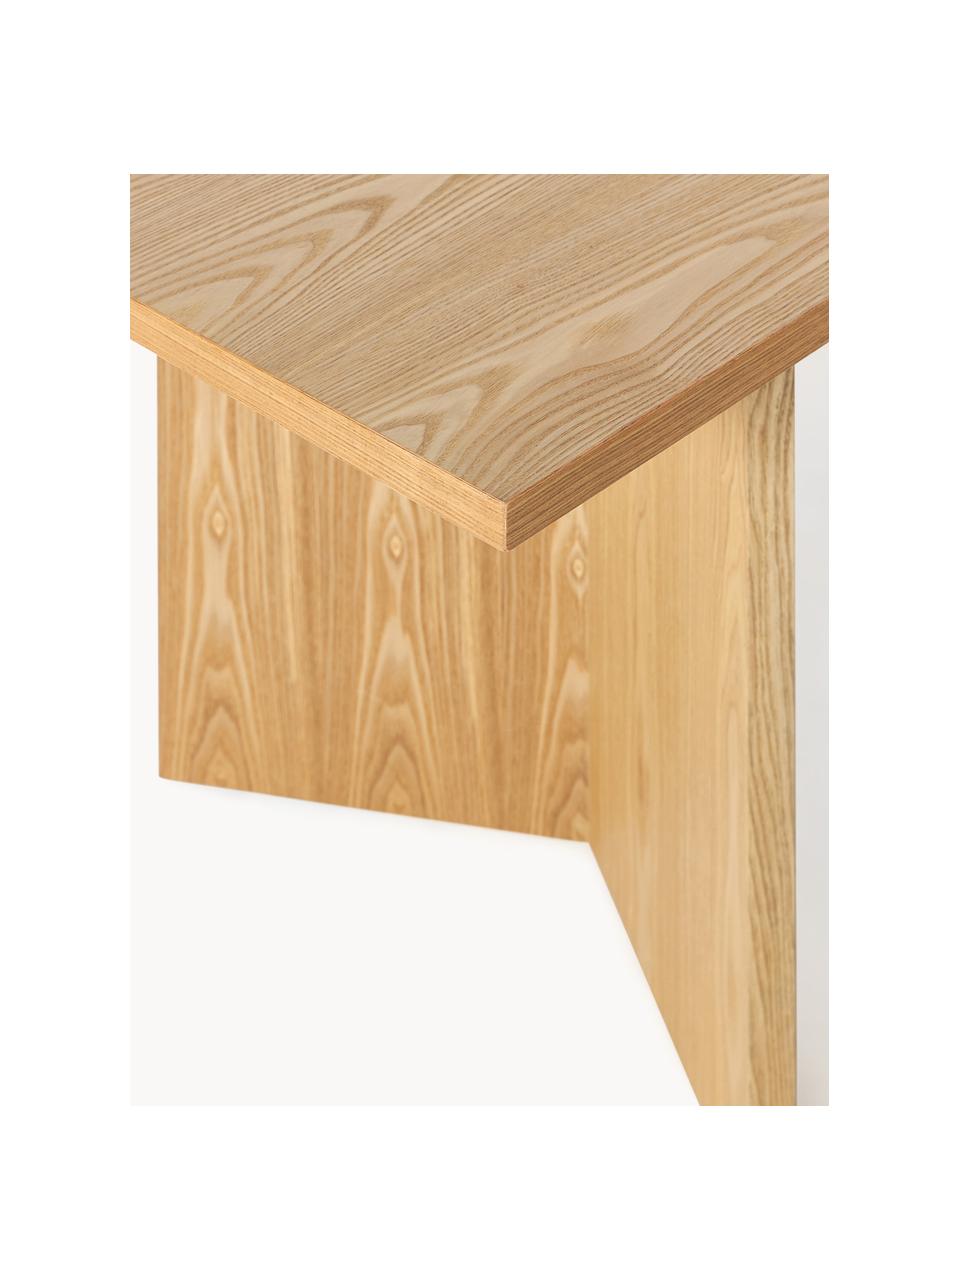 Jídelní stůl Toni, 200 x 90 cn, Lakovaná MDF deska (dřevovláknitá deska střední hustoty) s dubovou dýhou, Světlé dřevo, Š 200 cm, V 75 cm